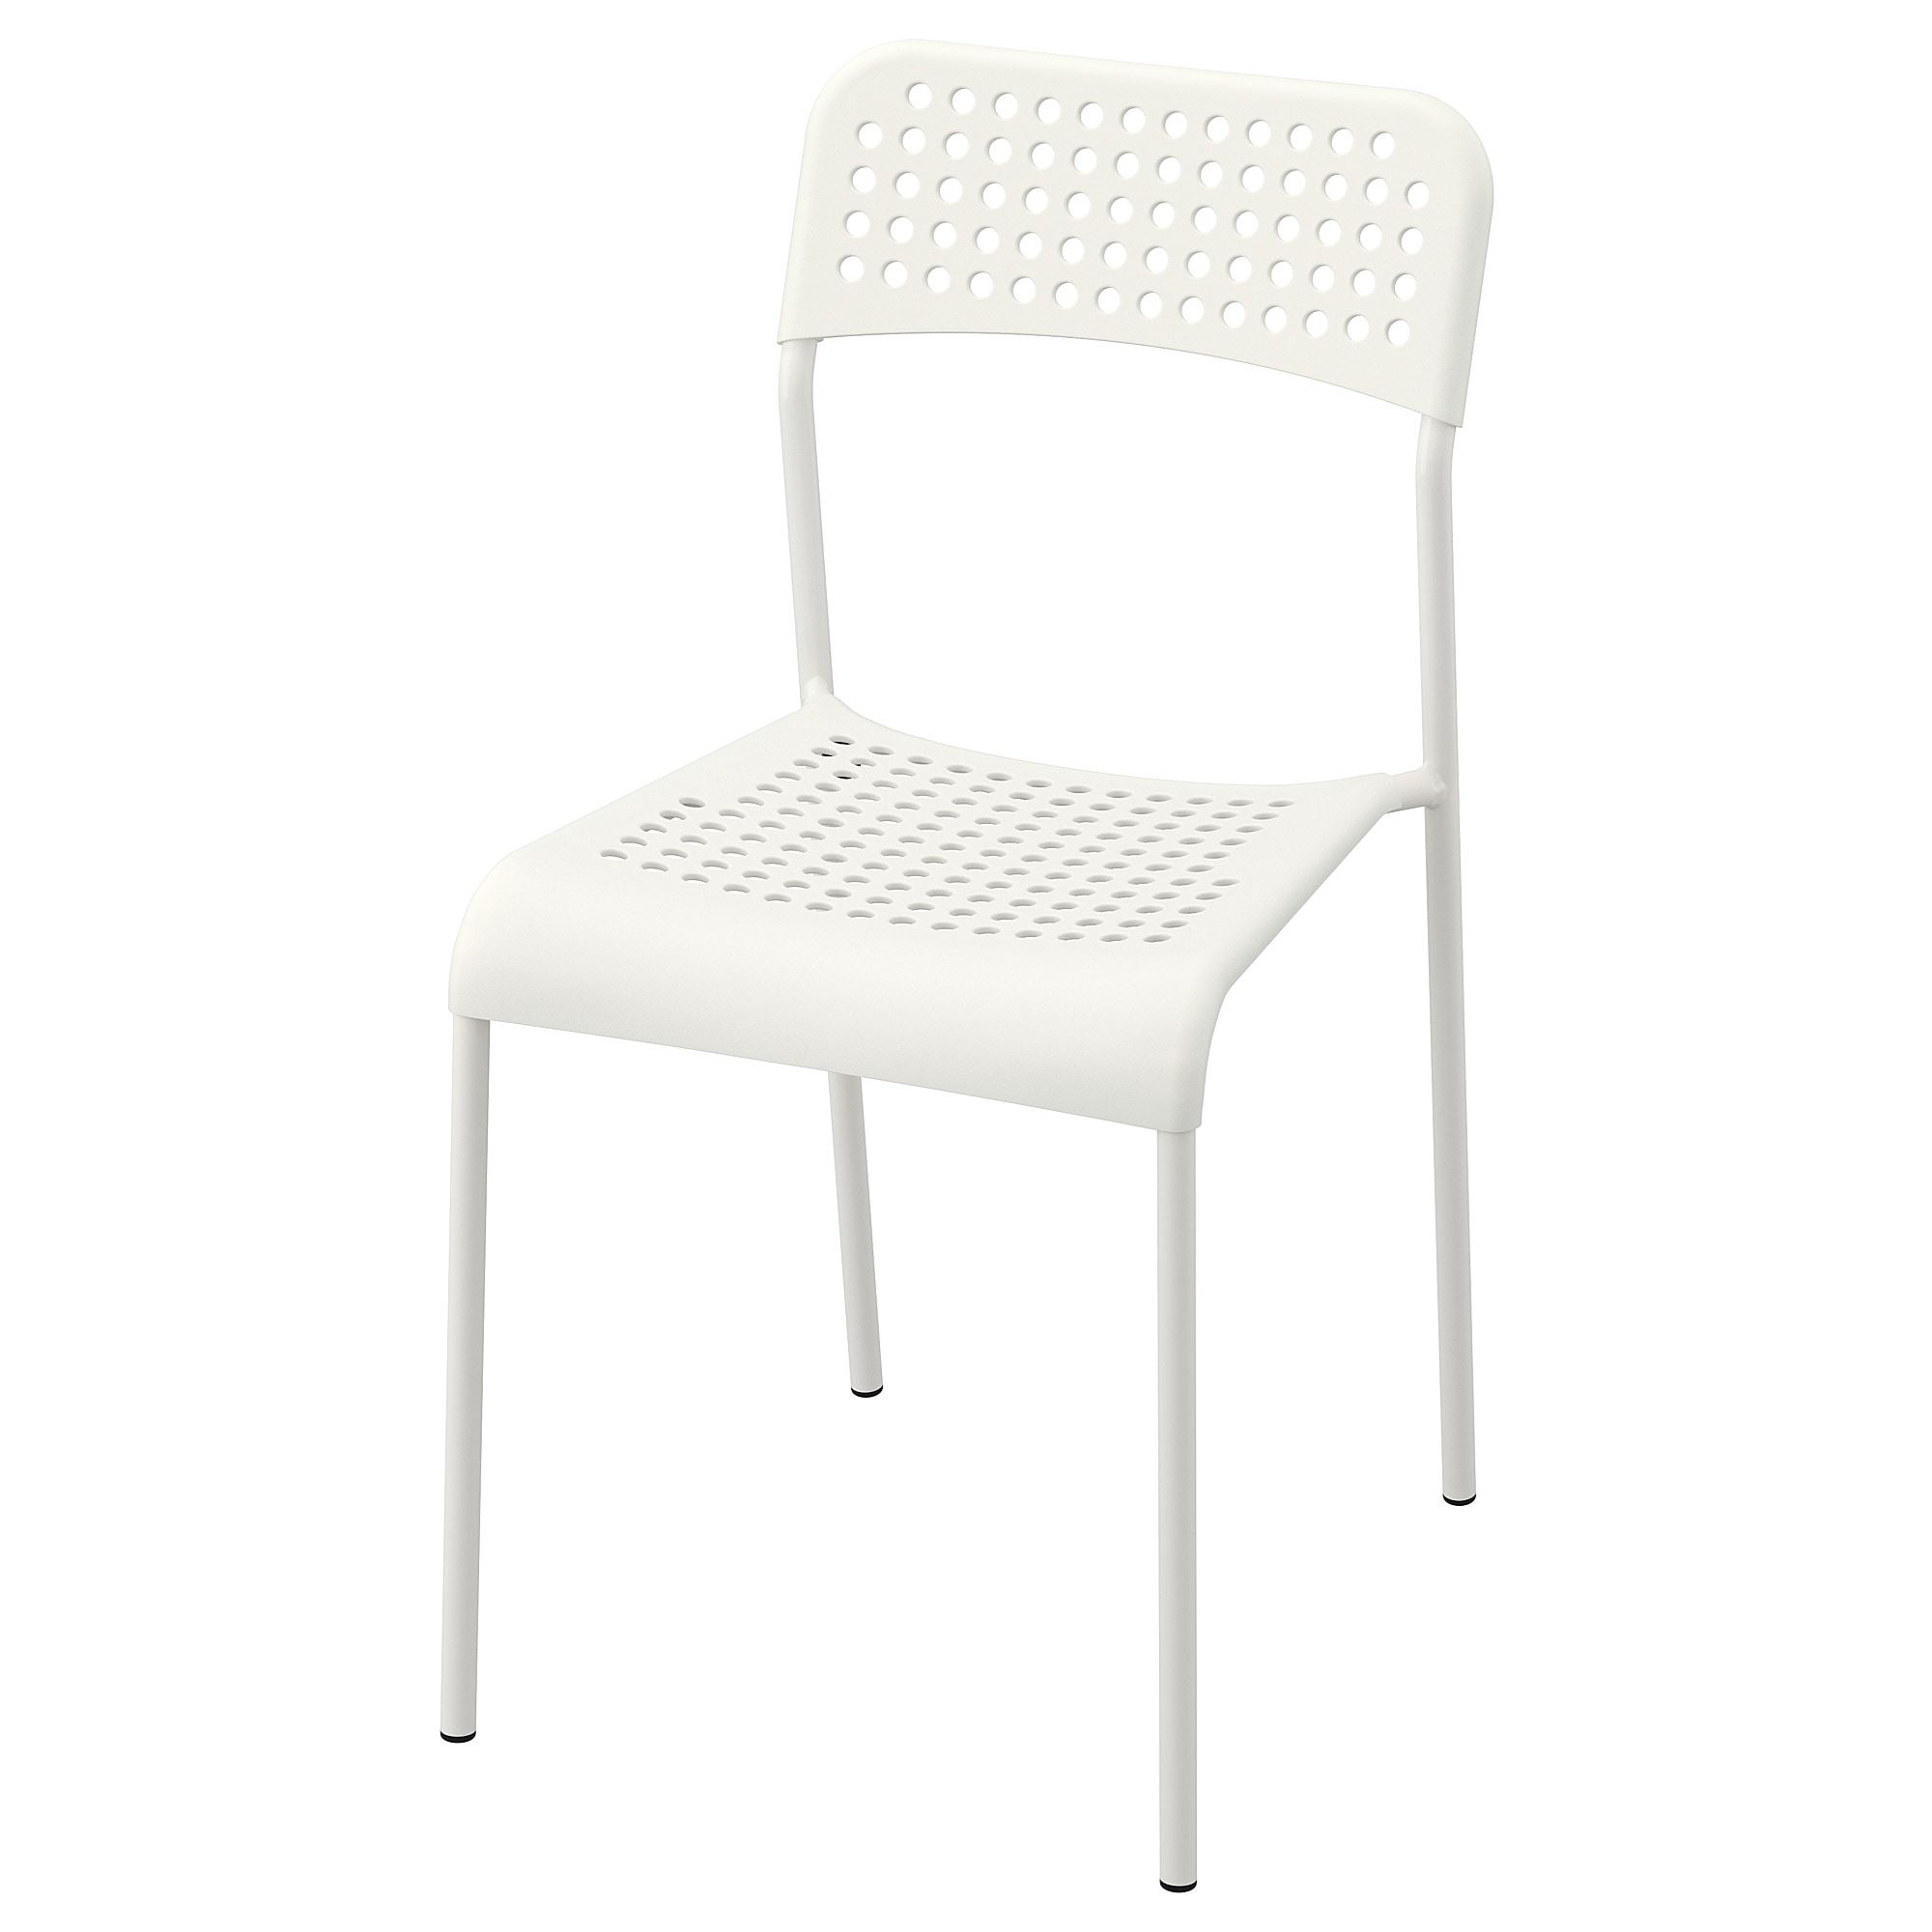 ADDE beyaz plastik sandalye  IKEA